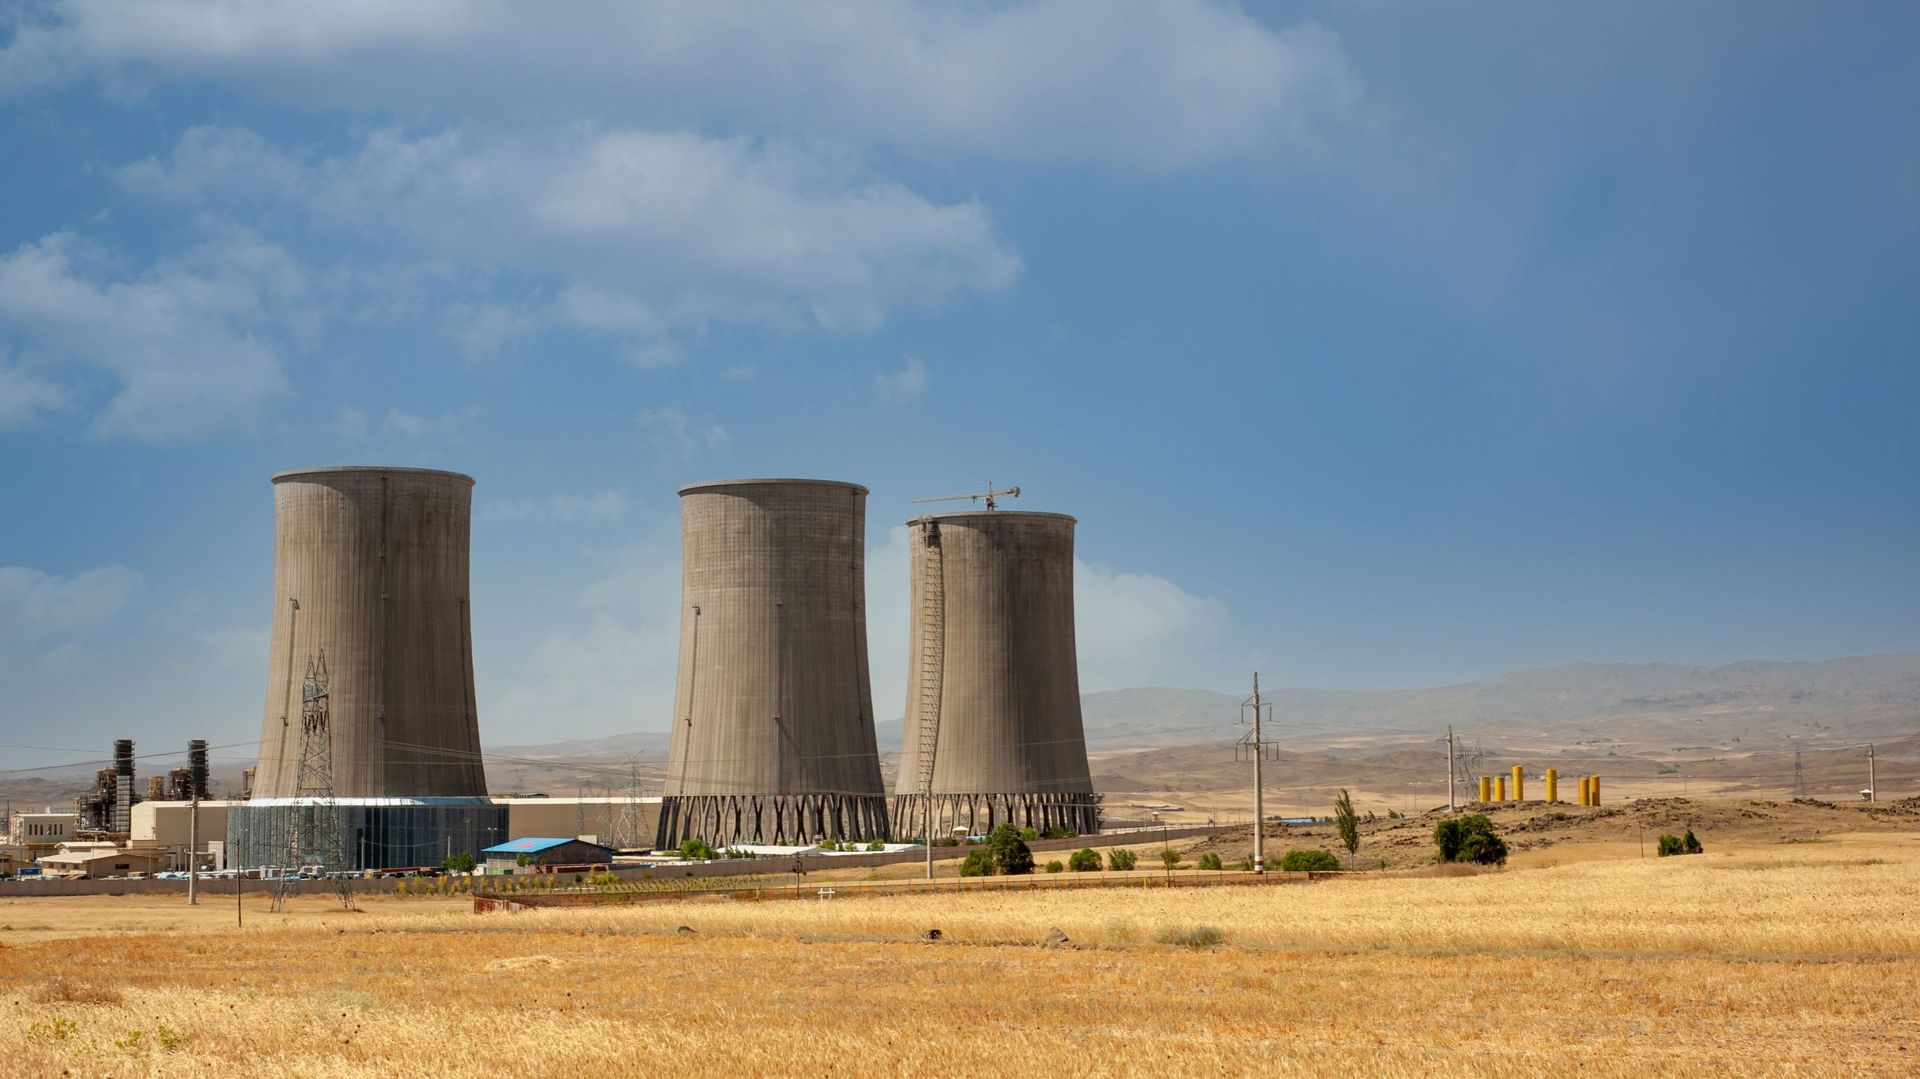 Image d'illustration - Tours de refroidissement de centrales nucléaires, grandes cheminées à côté du champ de blé avec un ciel partiellement nuageux dans la province du Kurdistan, Iran.